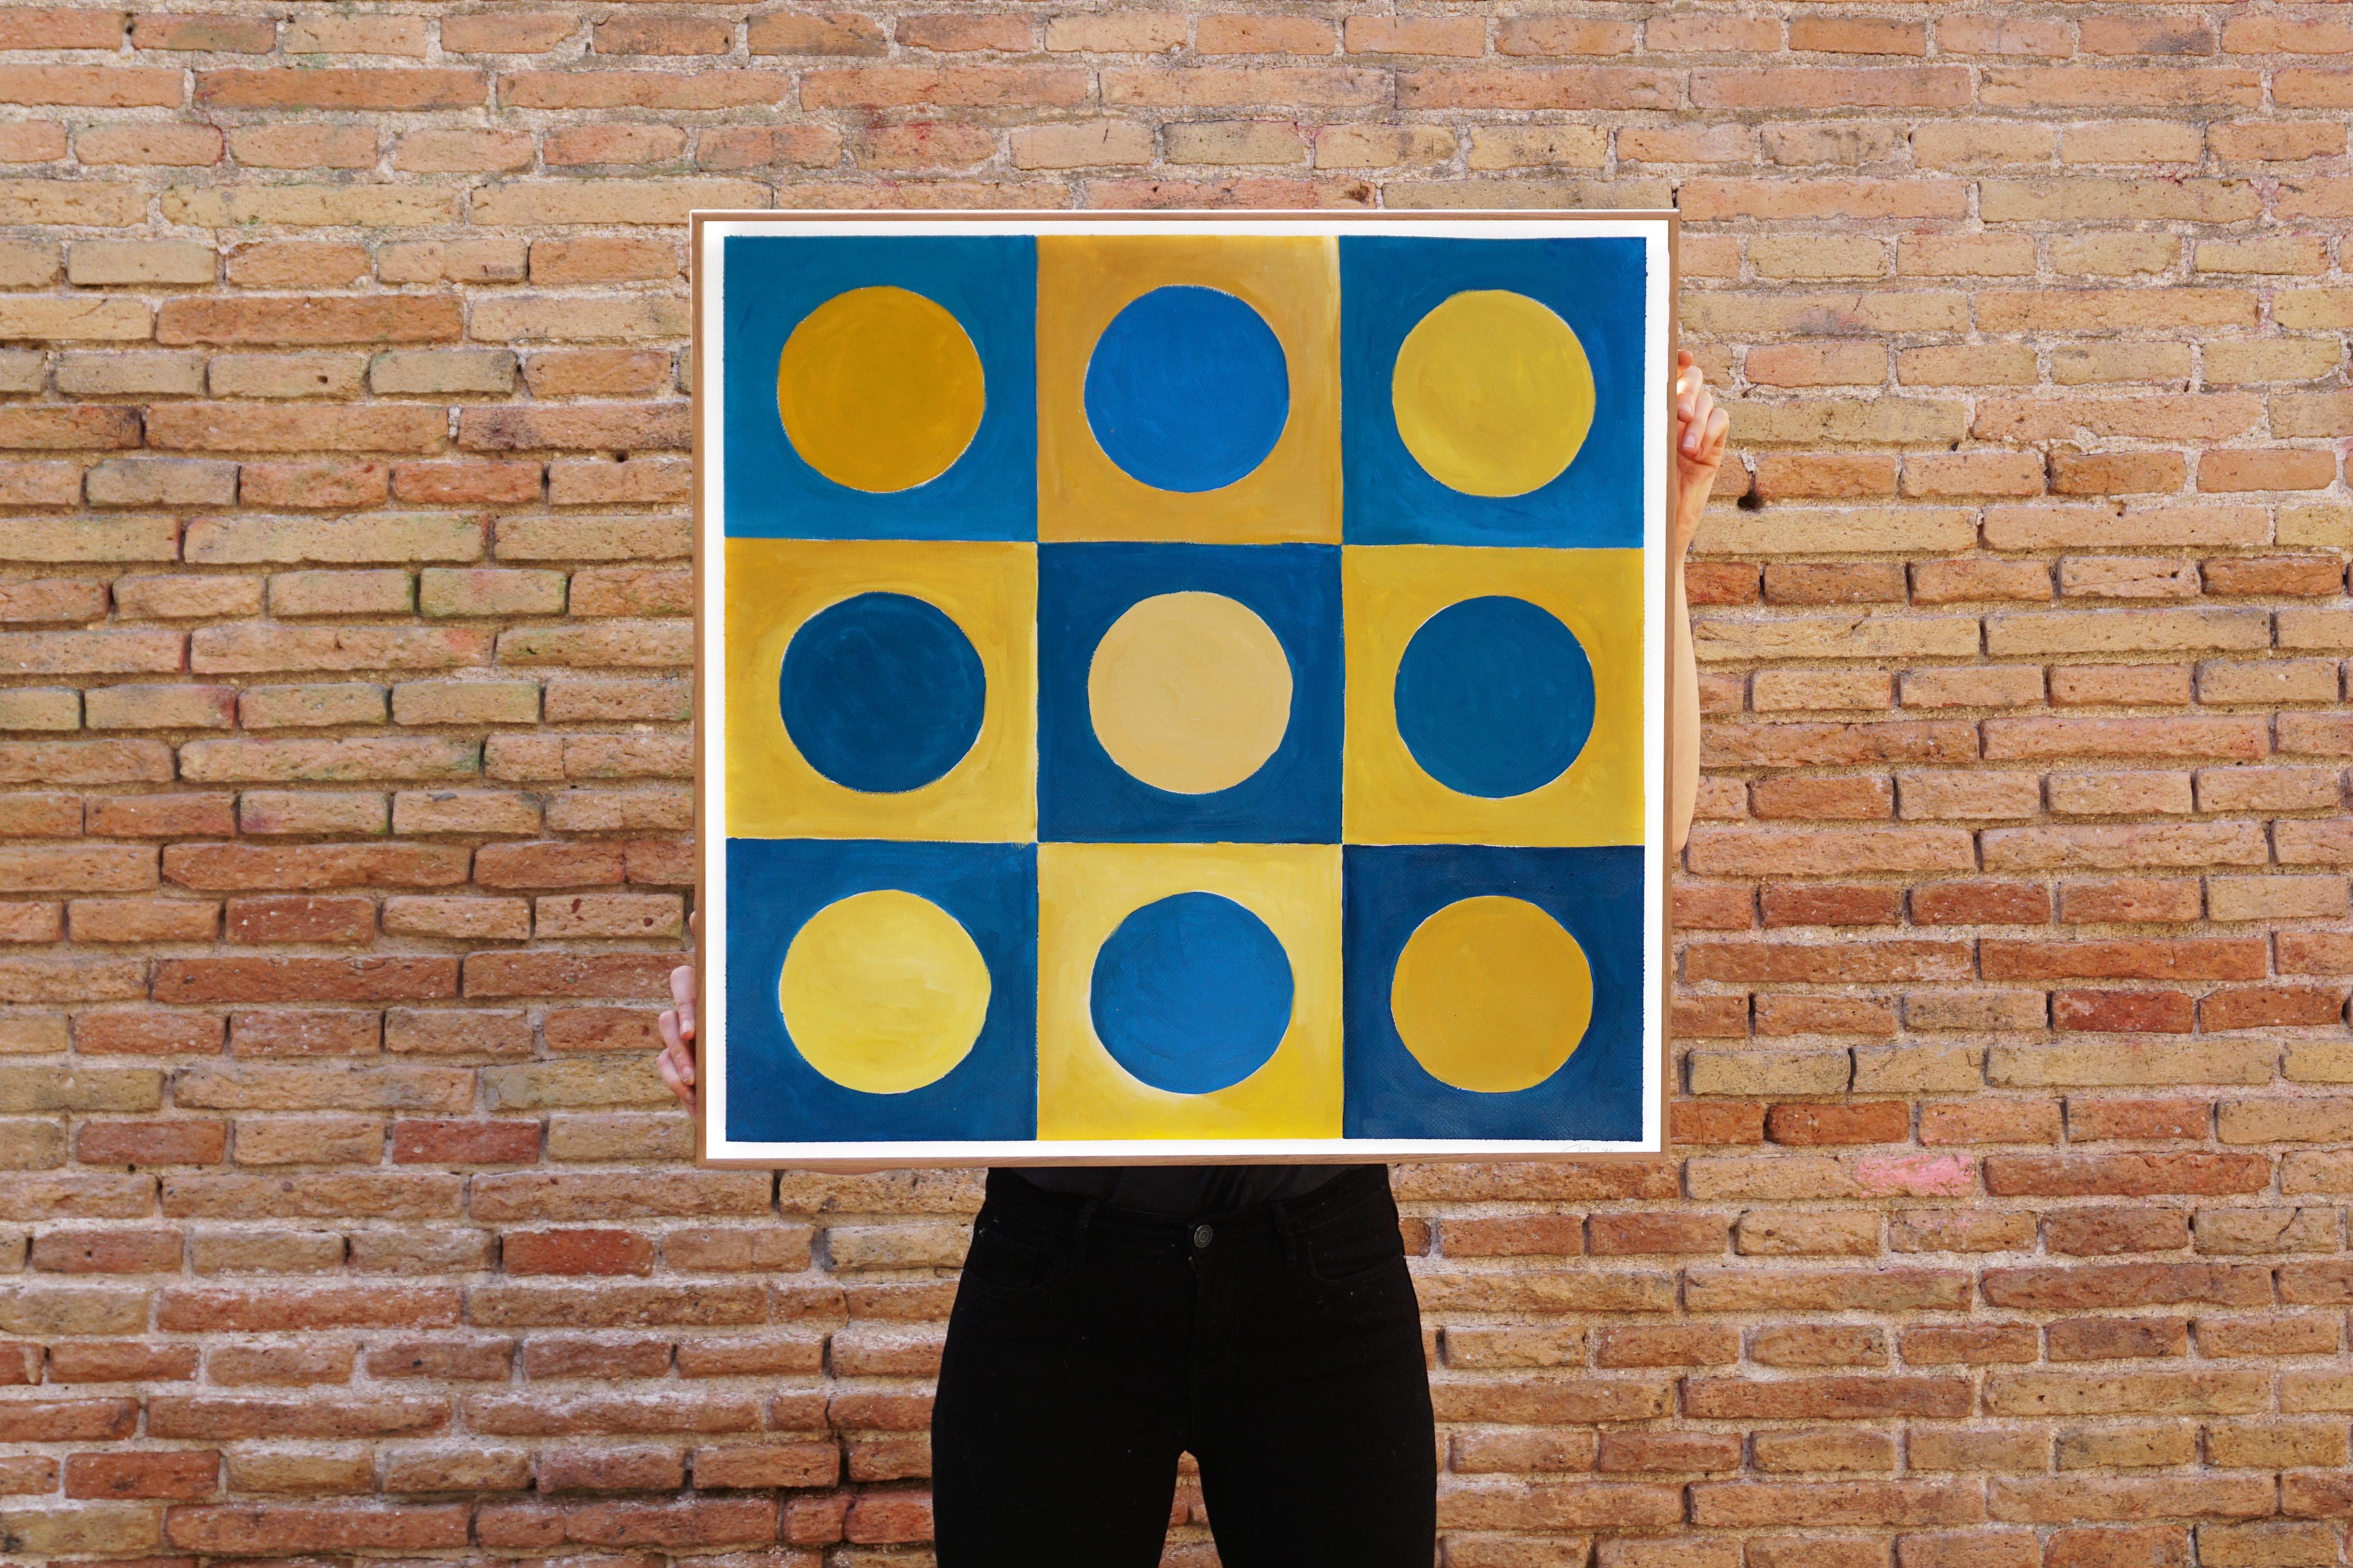 Blassblaue Punkte, Primärgeometrie Gitter, Gelb und Blau, Komplementärtöne  (Art déco), Painting, von Natalia Roman